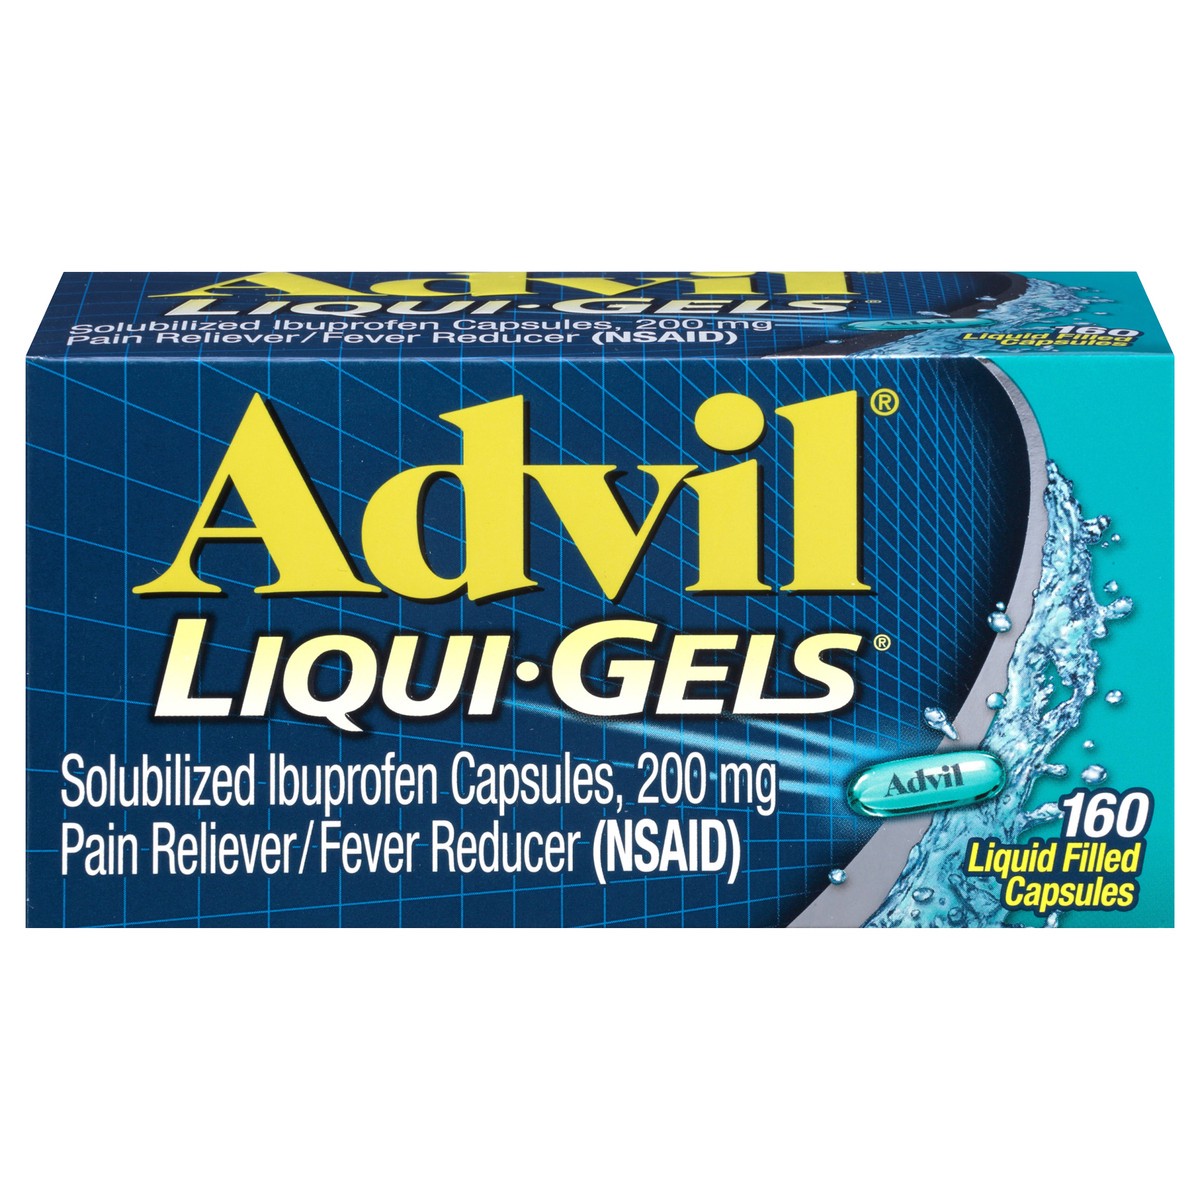 slide 1 of 18, Advil Pain Reliever/Fever Reducer Liqui-Gels Capsules - Ibuprofen (NSAID), 160 ct